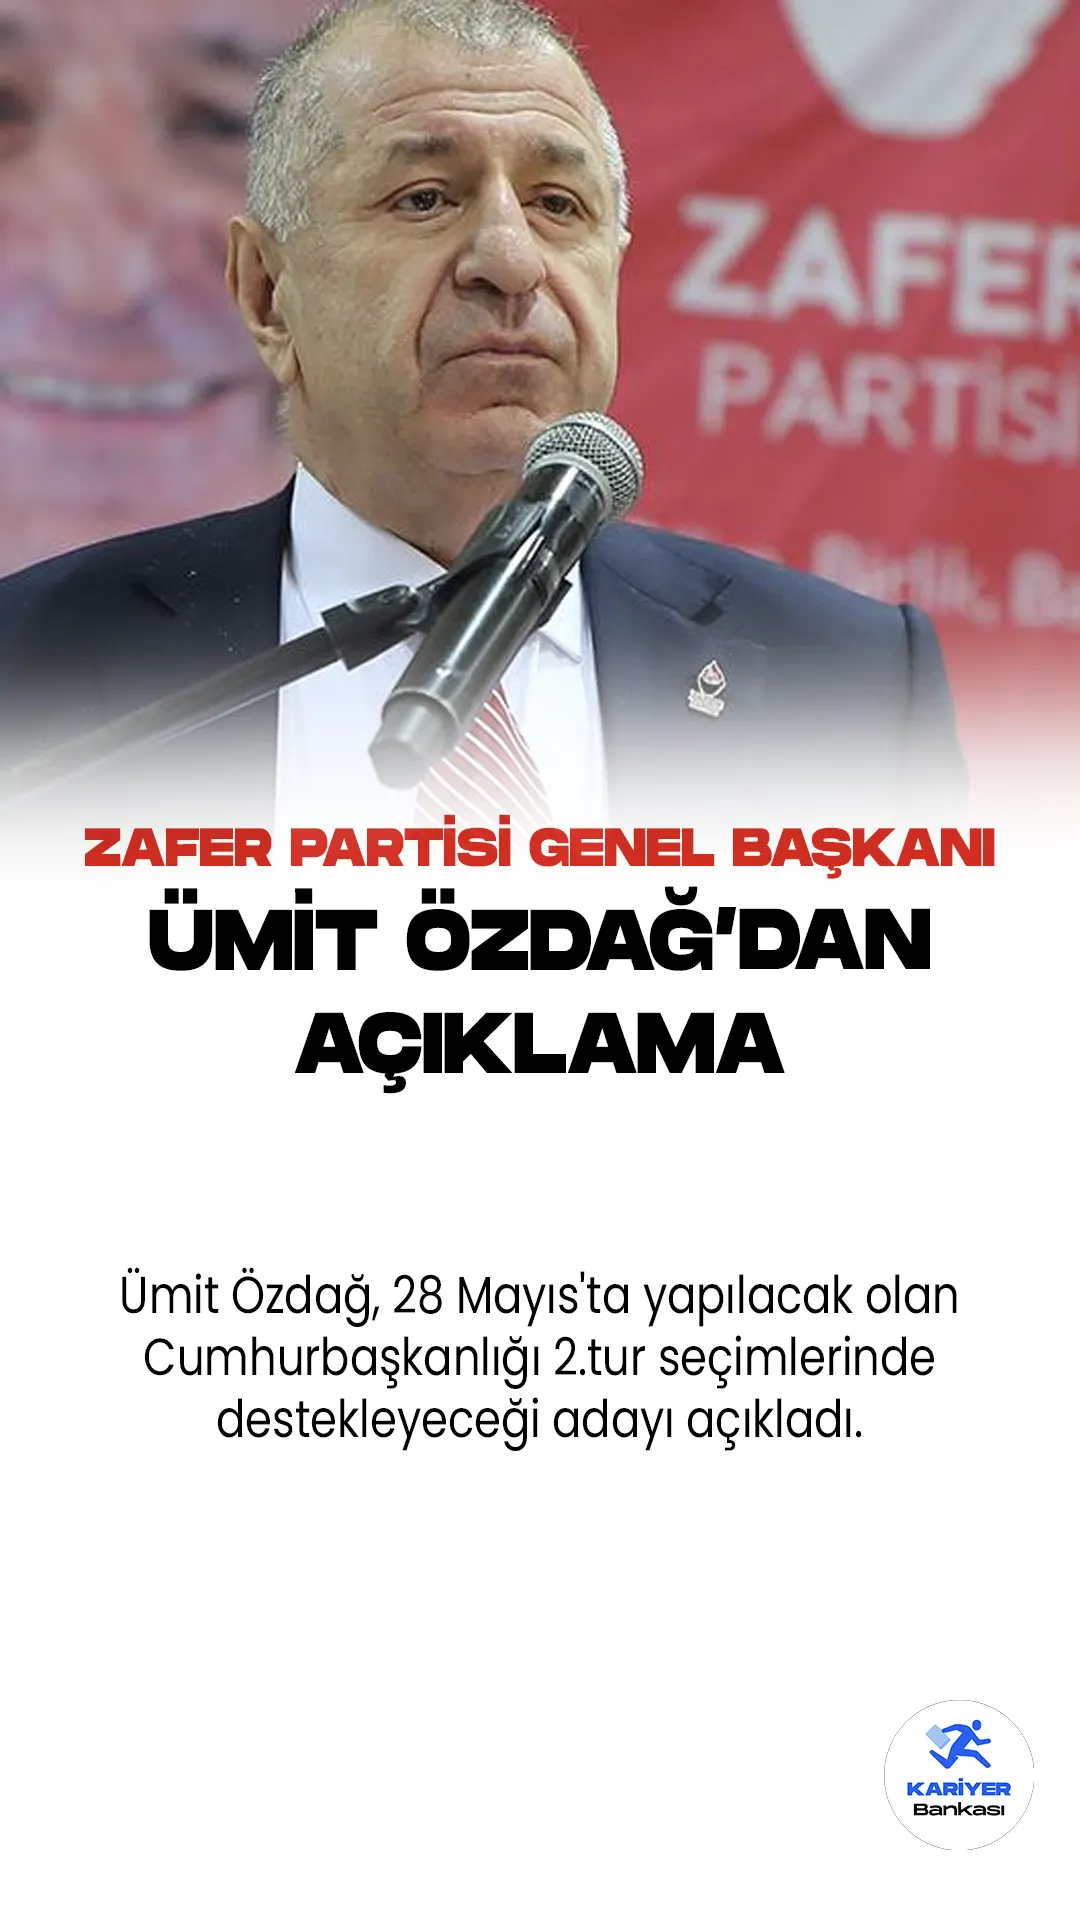 Ümit Özdağ, Zafer Partisi Genel Başkanı olarak, 28 Mayıs'ta yapılacak olan ikinci tur seçimlerinde Kemal Kılıçdaroğlu'nu destekleyeceklerini duyurdu. Bu karar, CHP ve Zafer Partisi arasında imzalanan protokolün bir parçası olarak açıklandı.